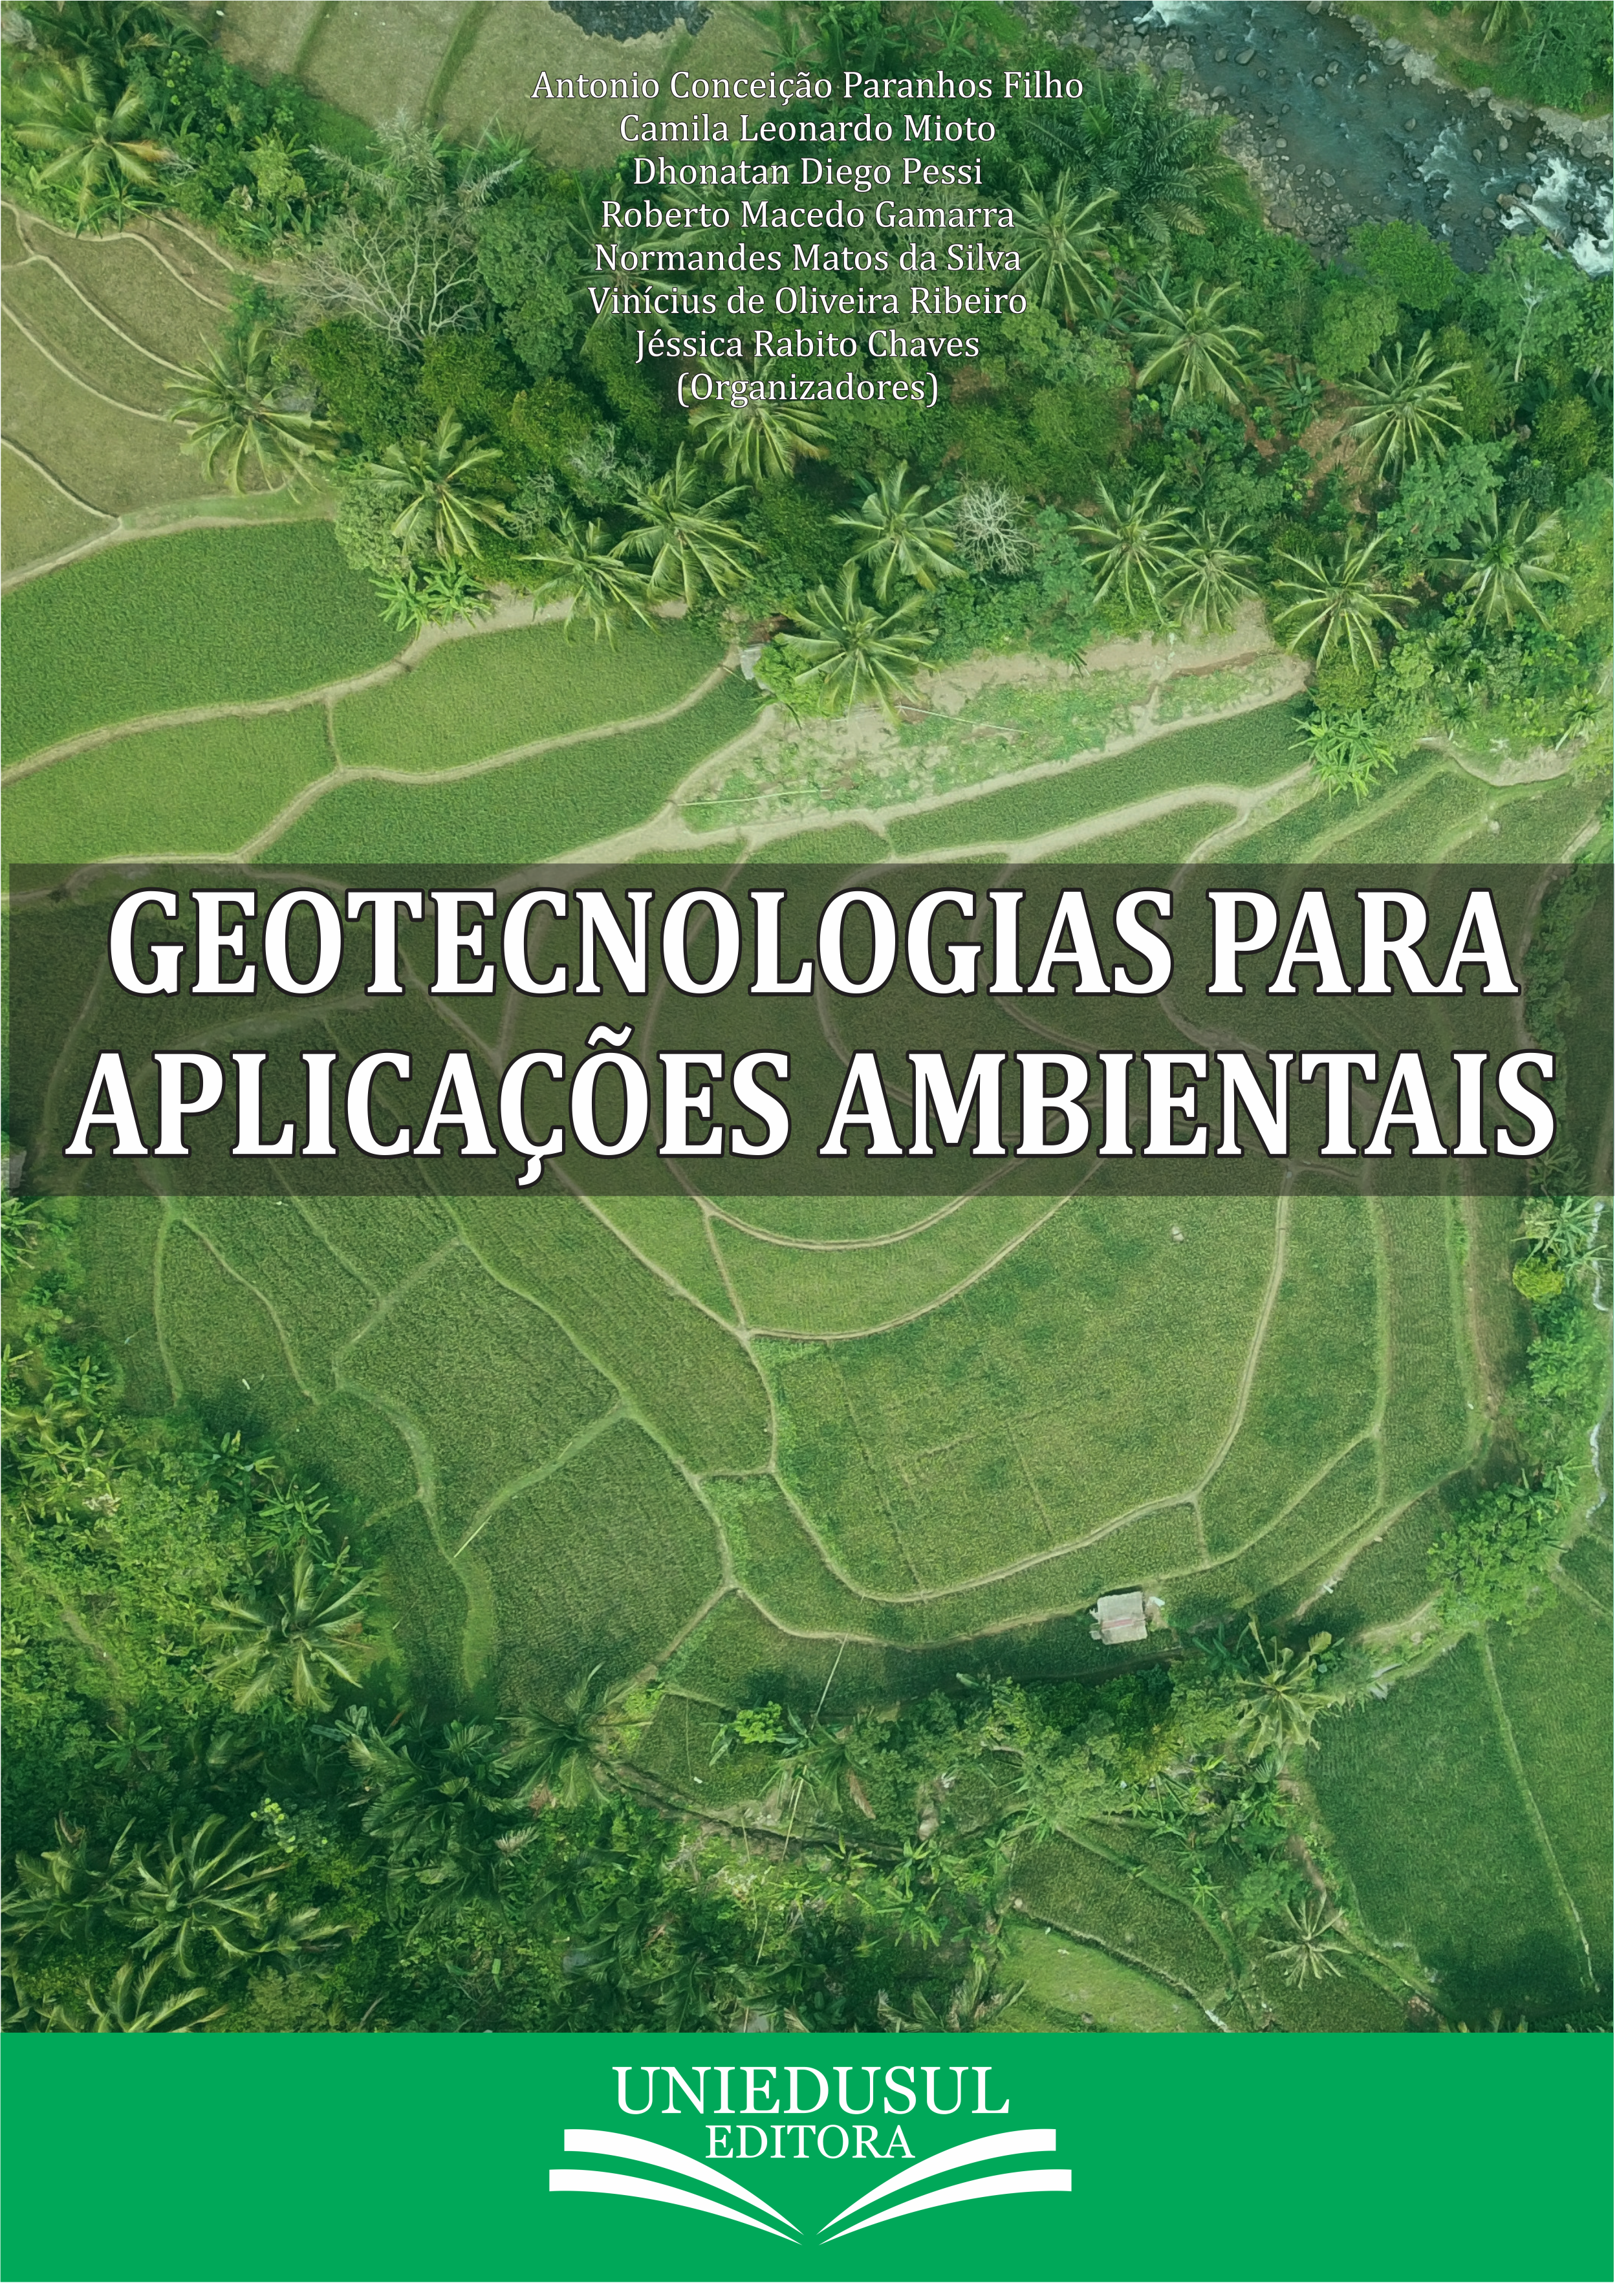 Geotecnologias para aplicações ambientais